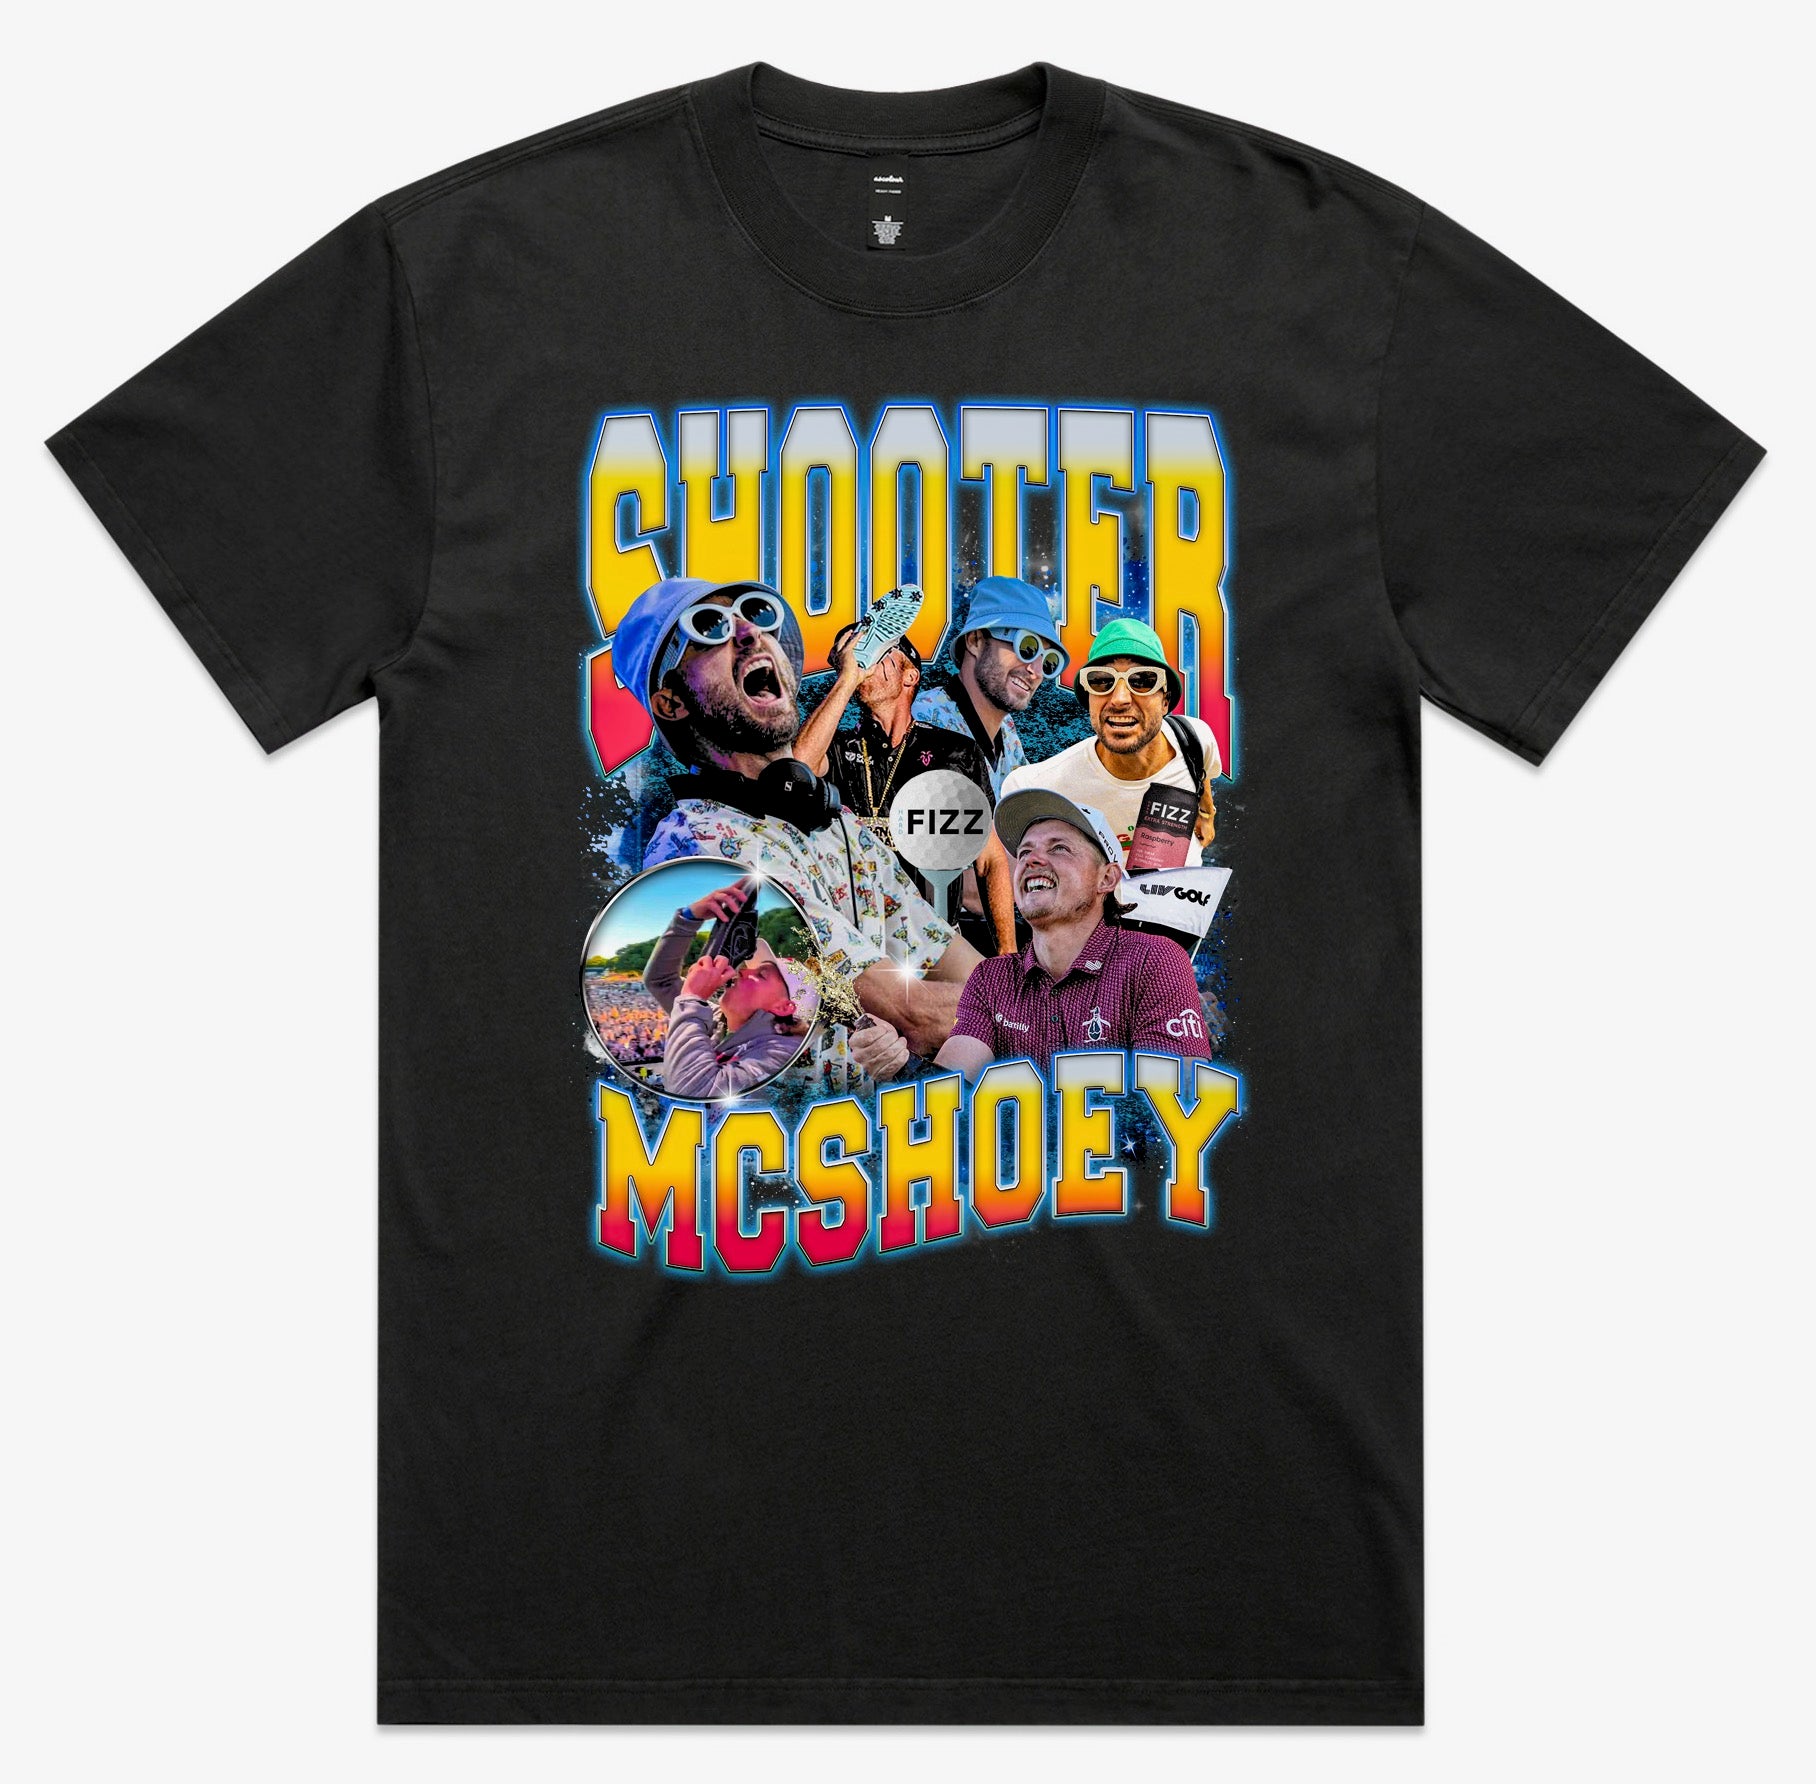 SHOOTER MCSHOEY TEE